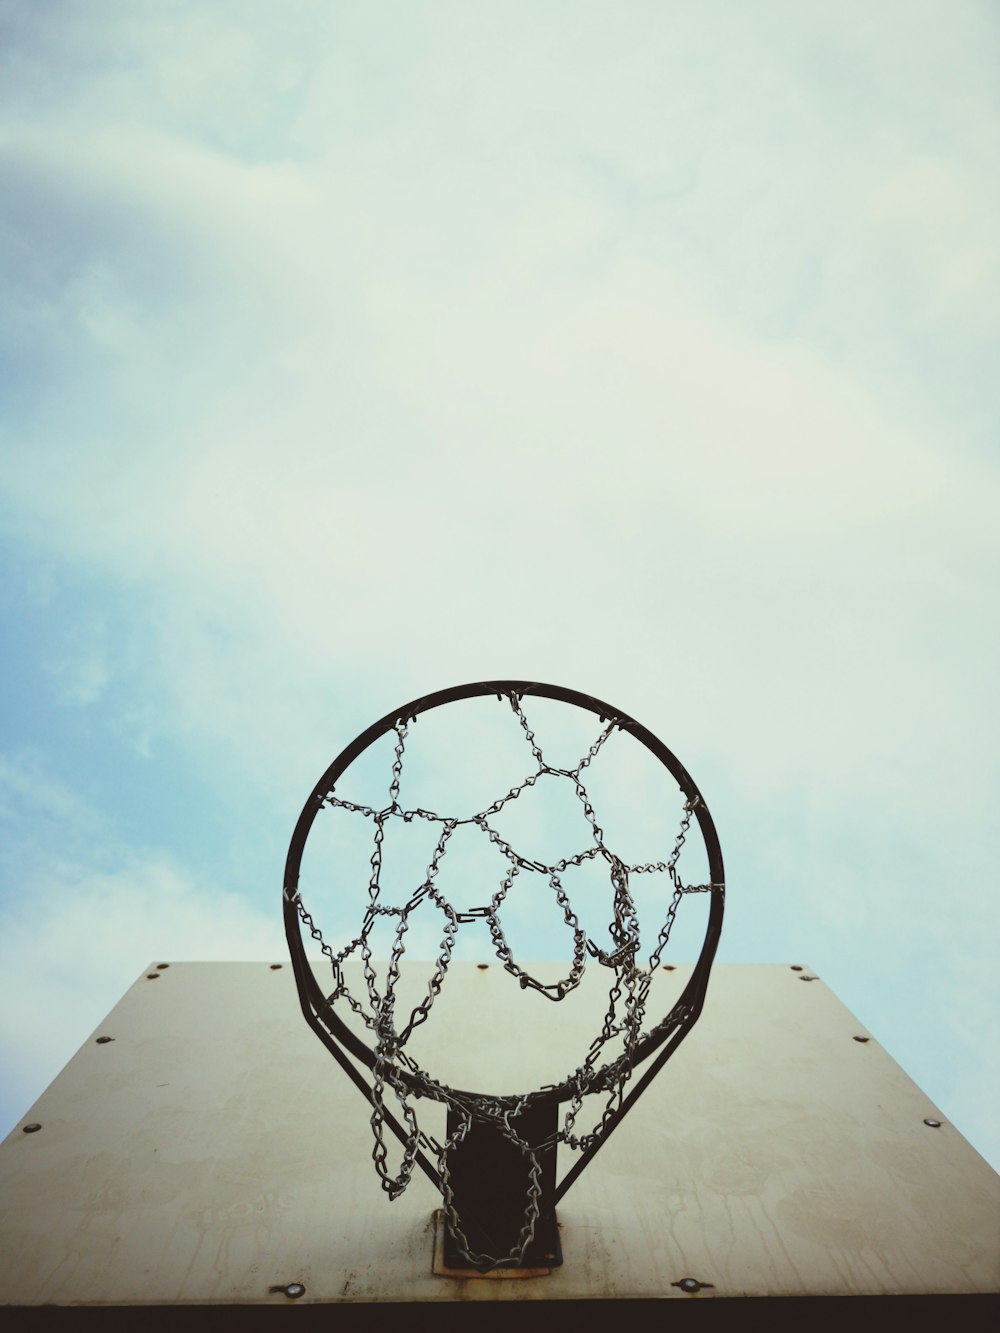 un panier de basket-ball sur un bâtiment